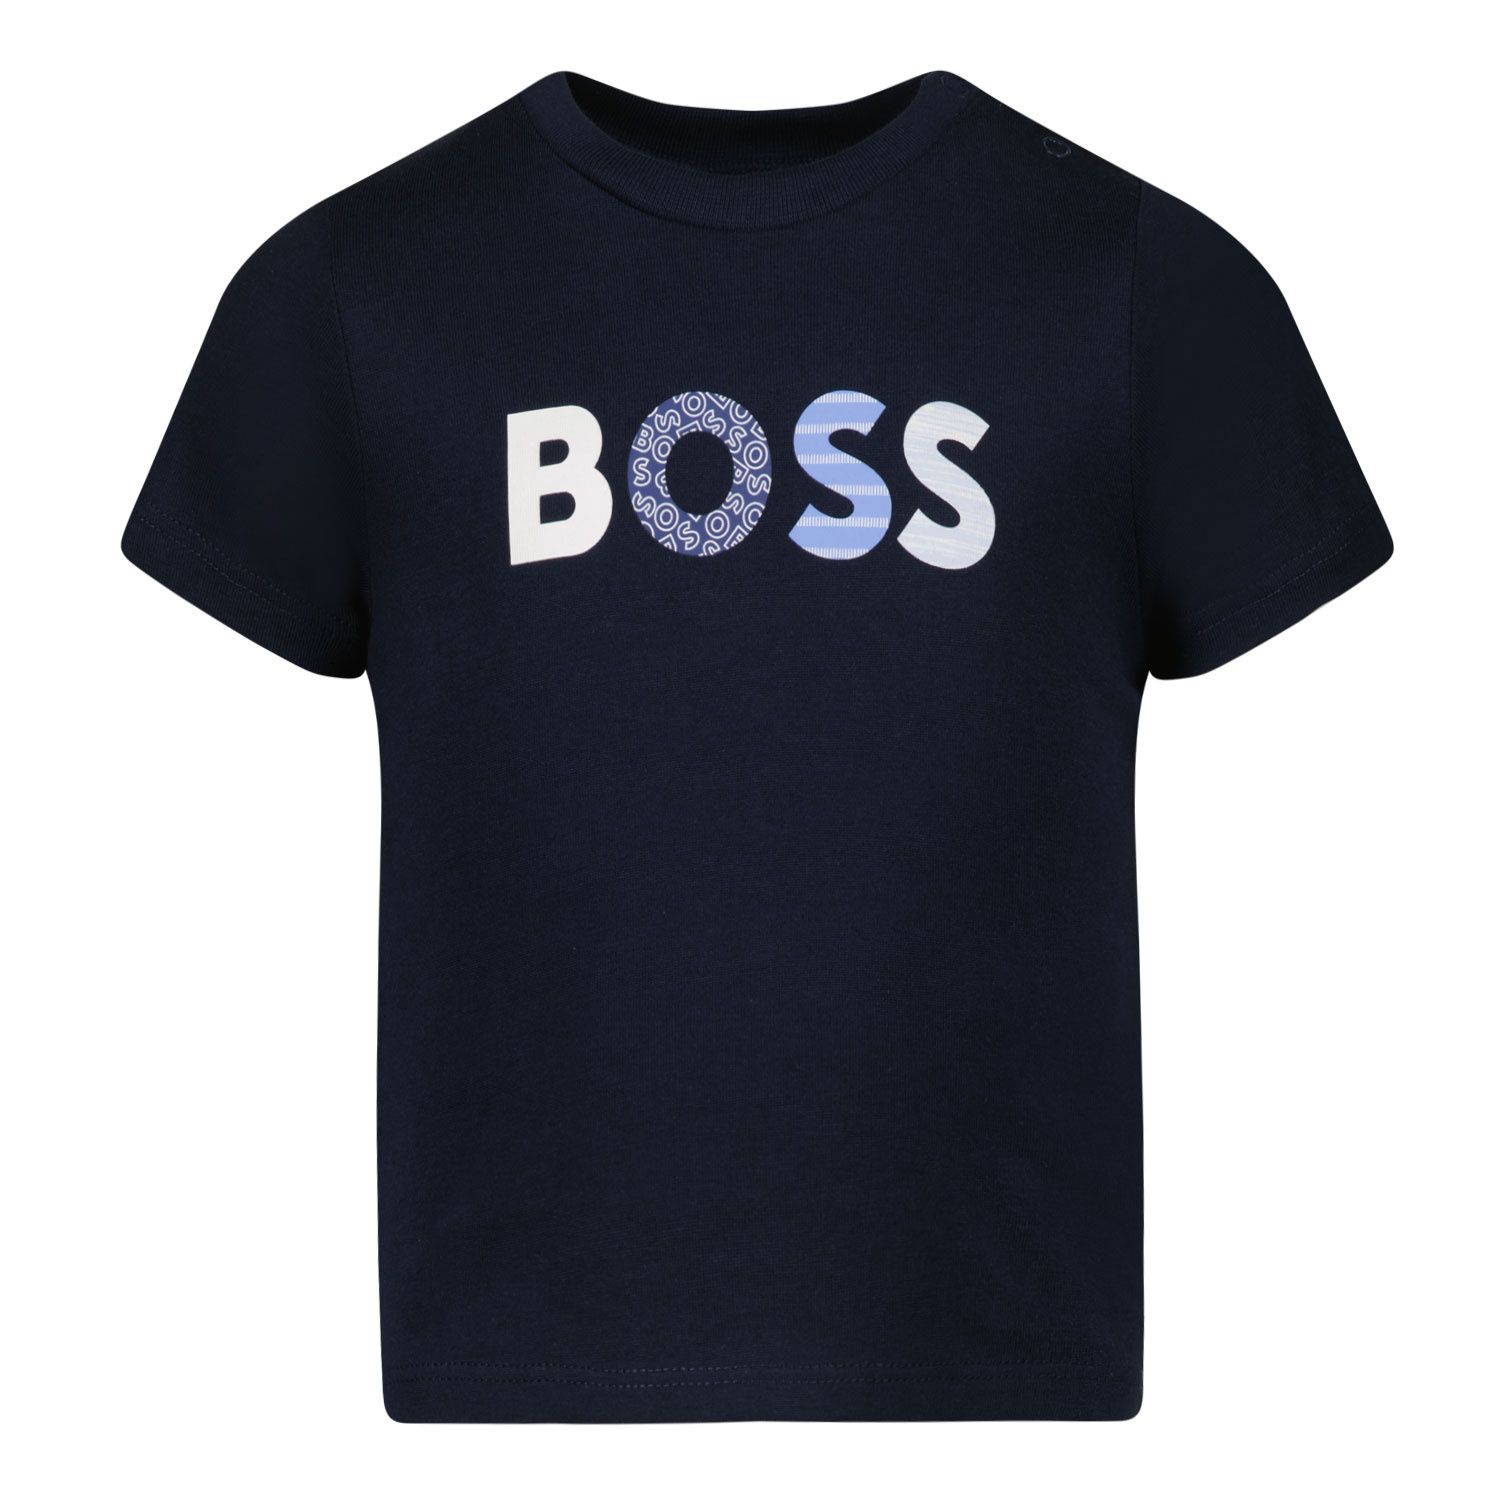 Afbeelding van Boss J95329 baby t-shirt navy